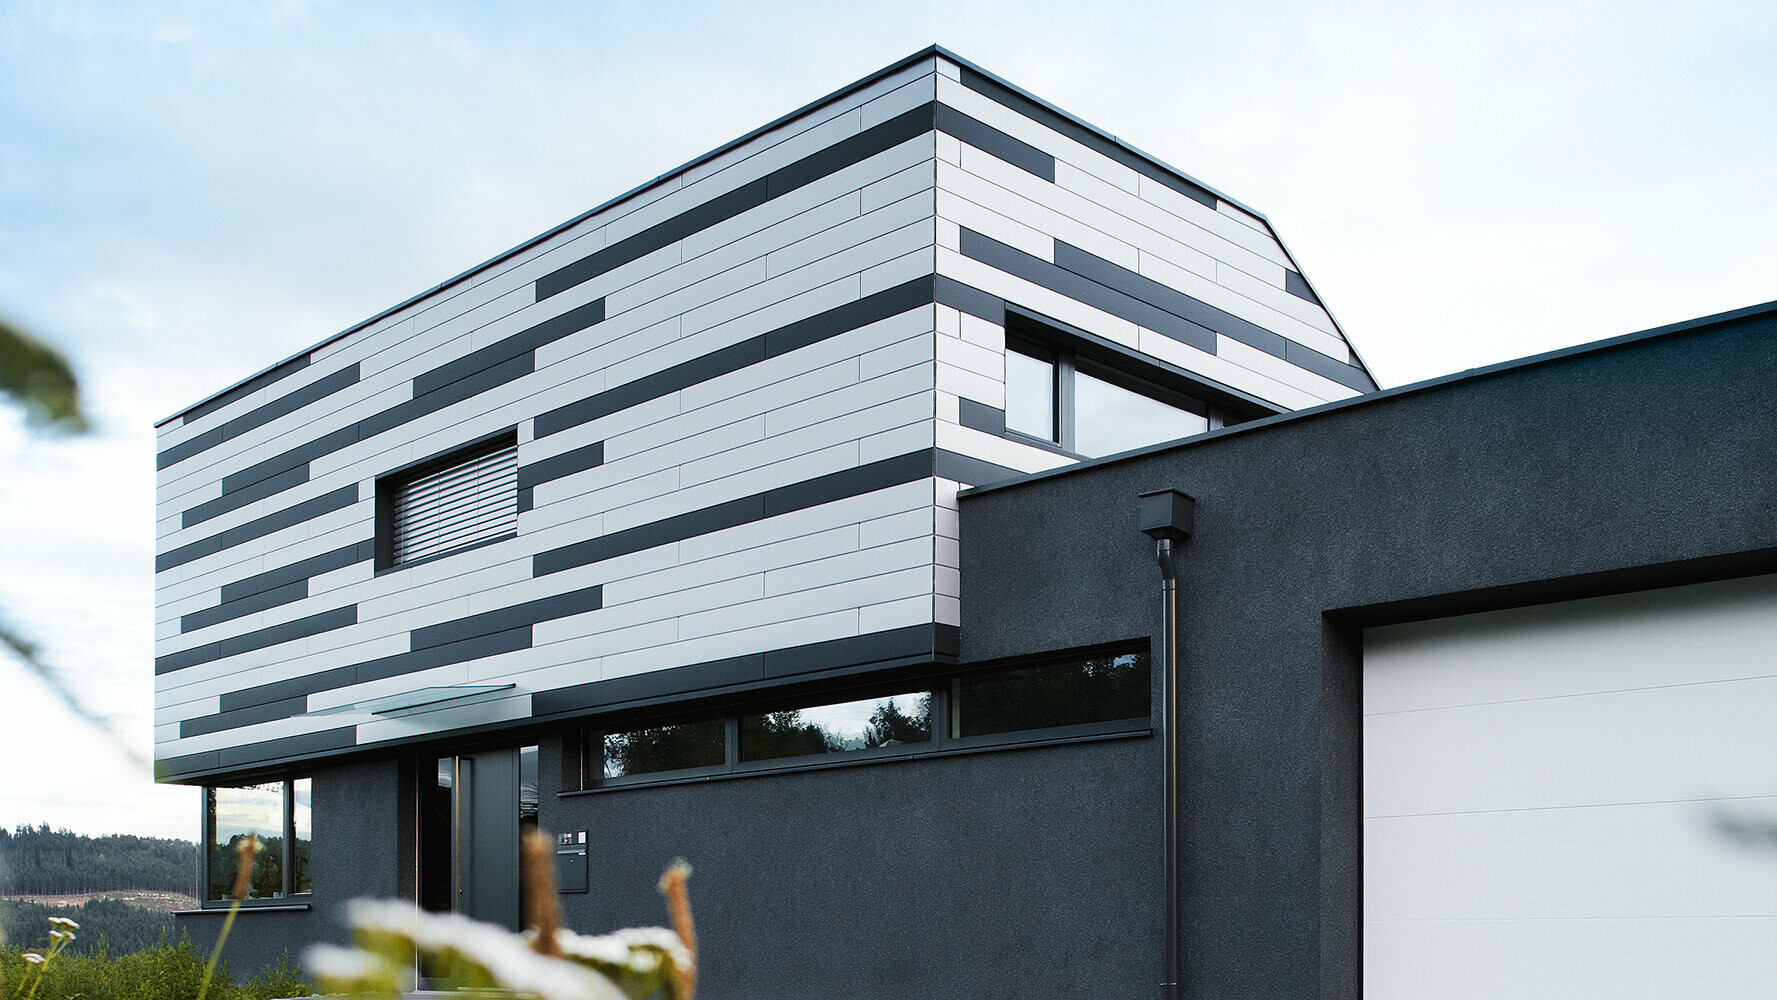 Moderní rodinný dům s kreativně ztvárněnou fasádou; systém PREFA Sidings byl položen střídavě ve stříbrné a antracitové barvě.